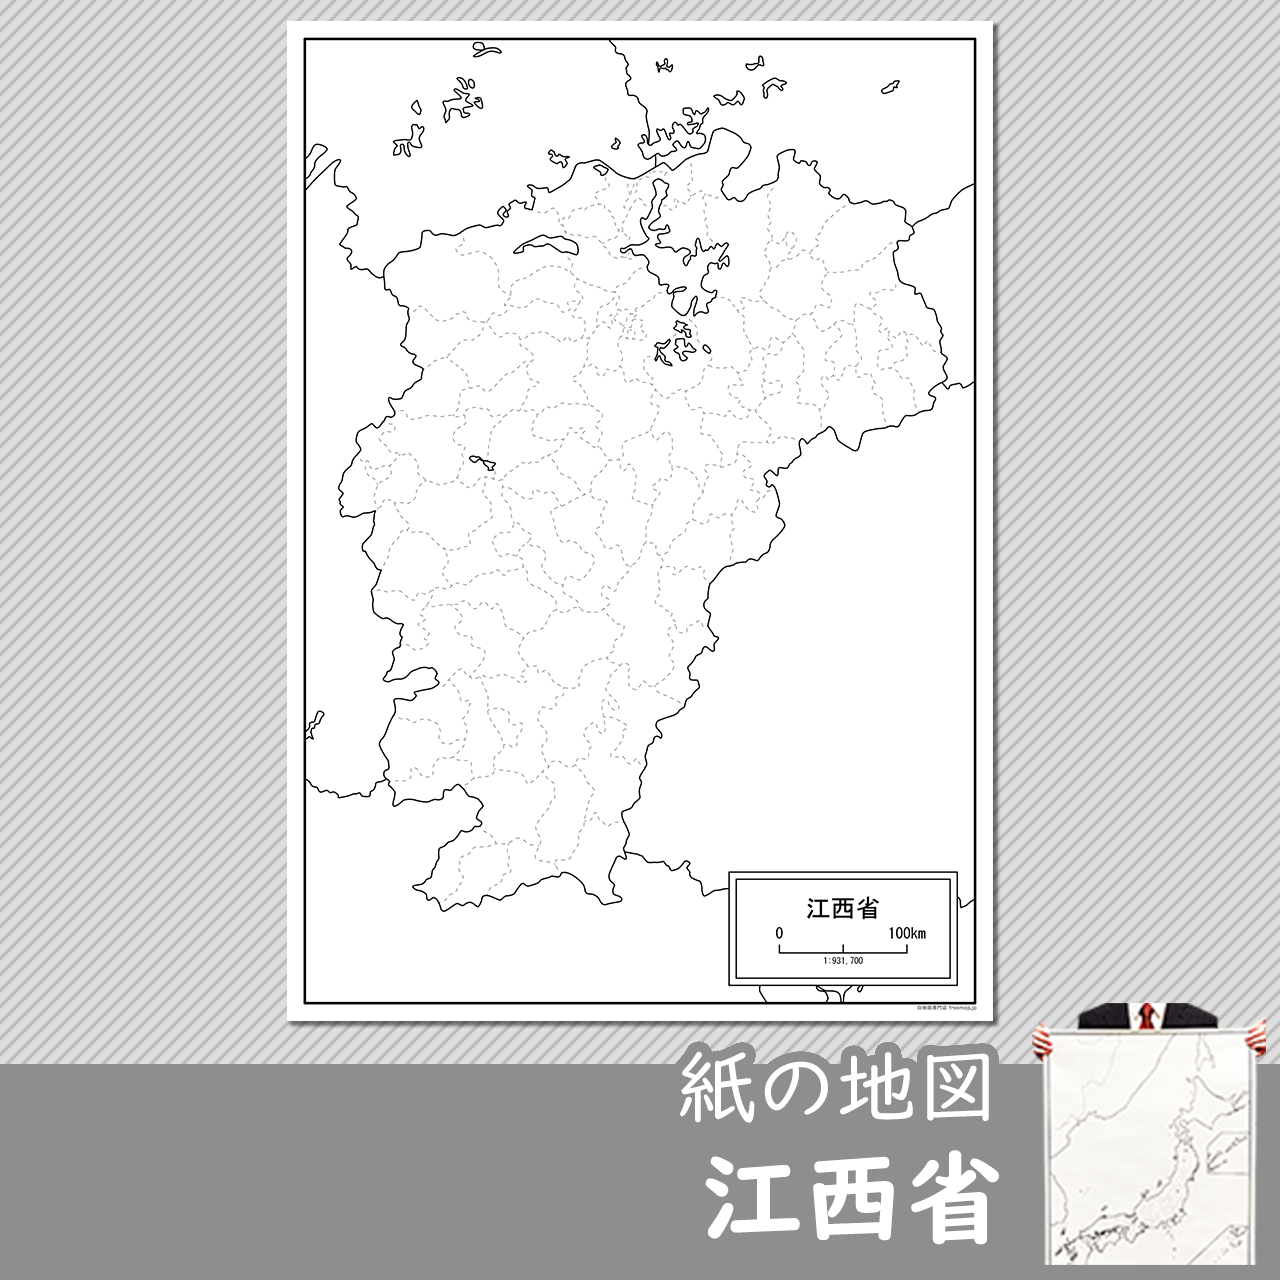 江西省（こうせいしょう）の紙の白地図のサムネイル